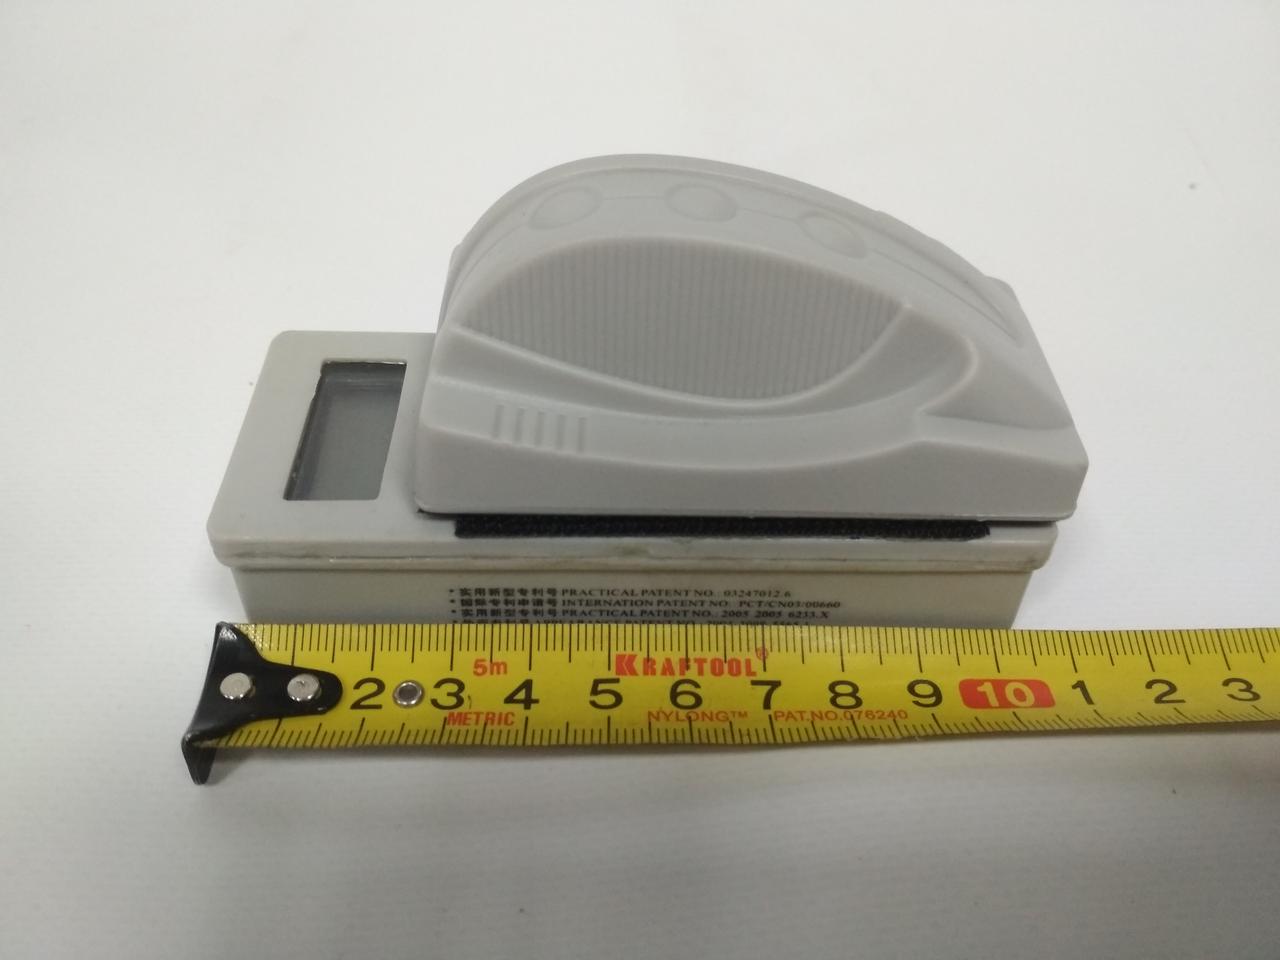 Магнитный скребок с ж/к термометром Boyu WD 601 